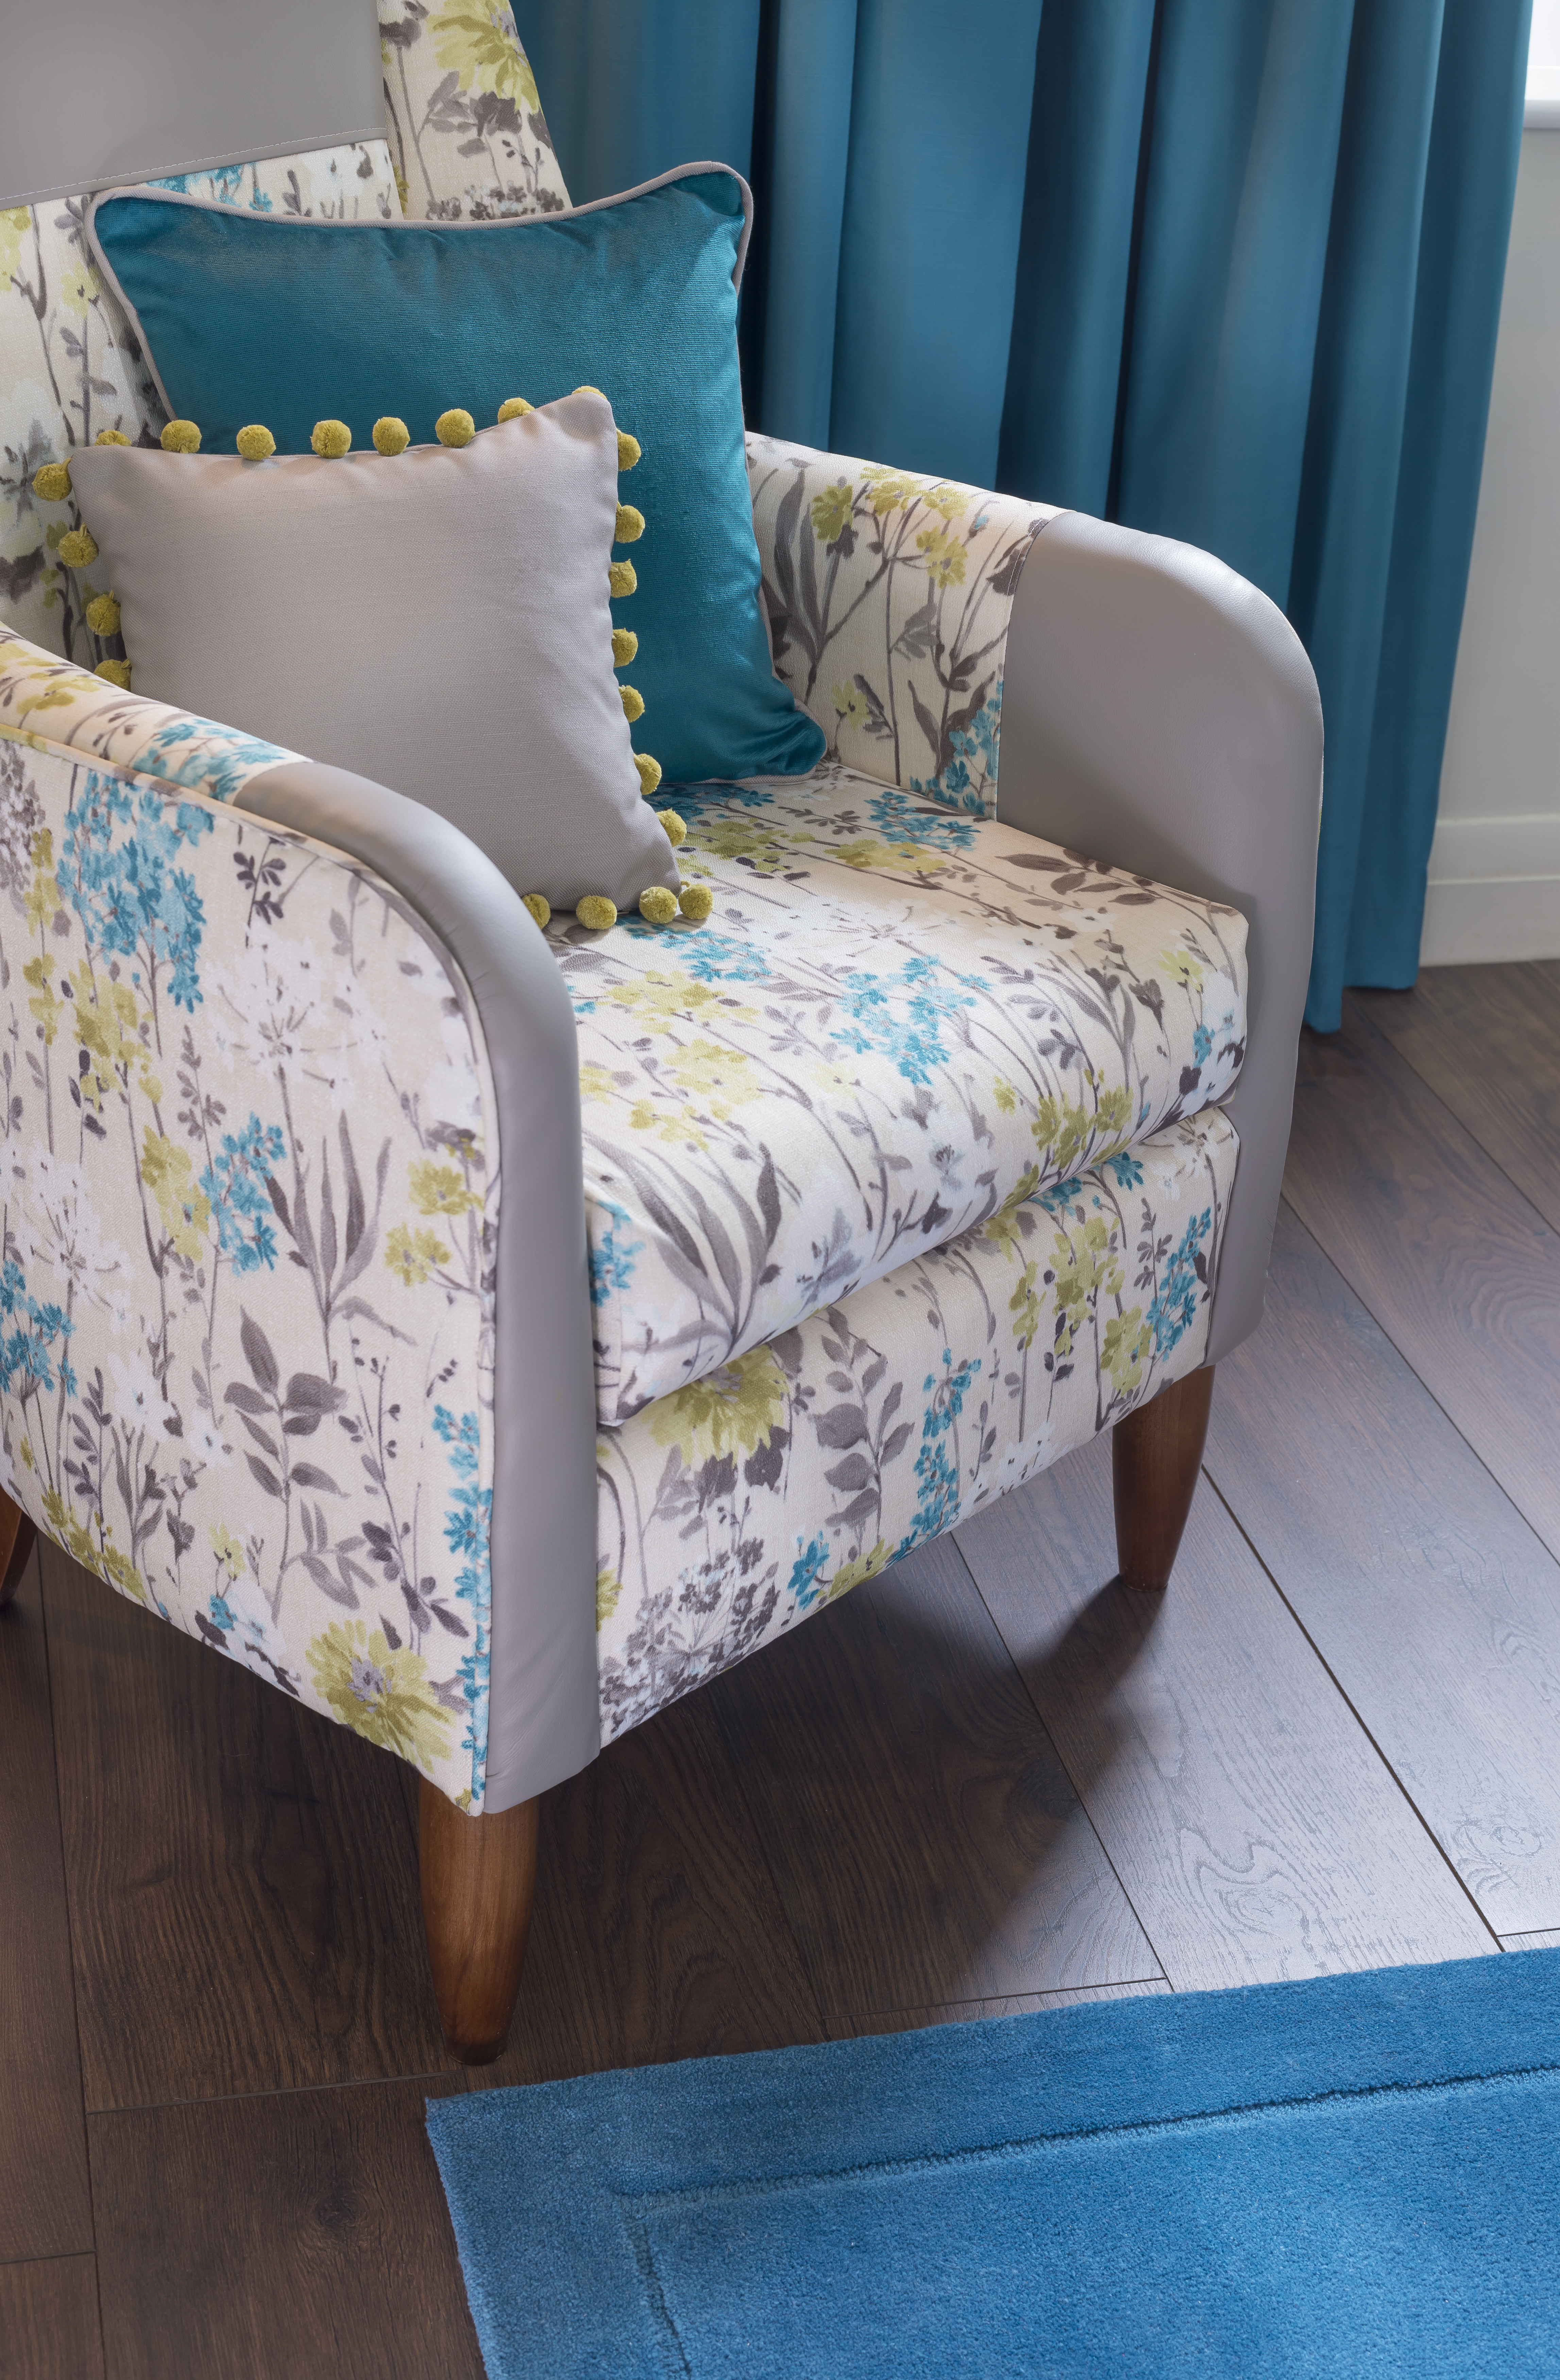 Fabric chair detail